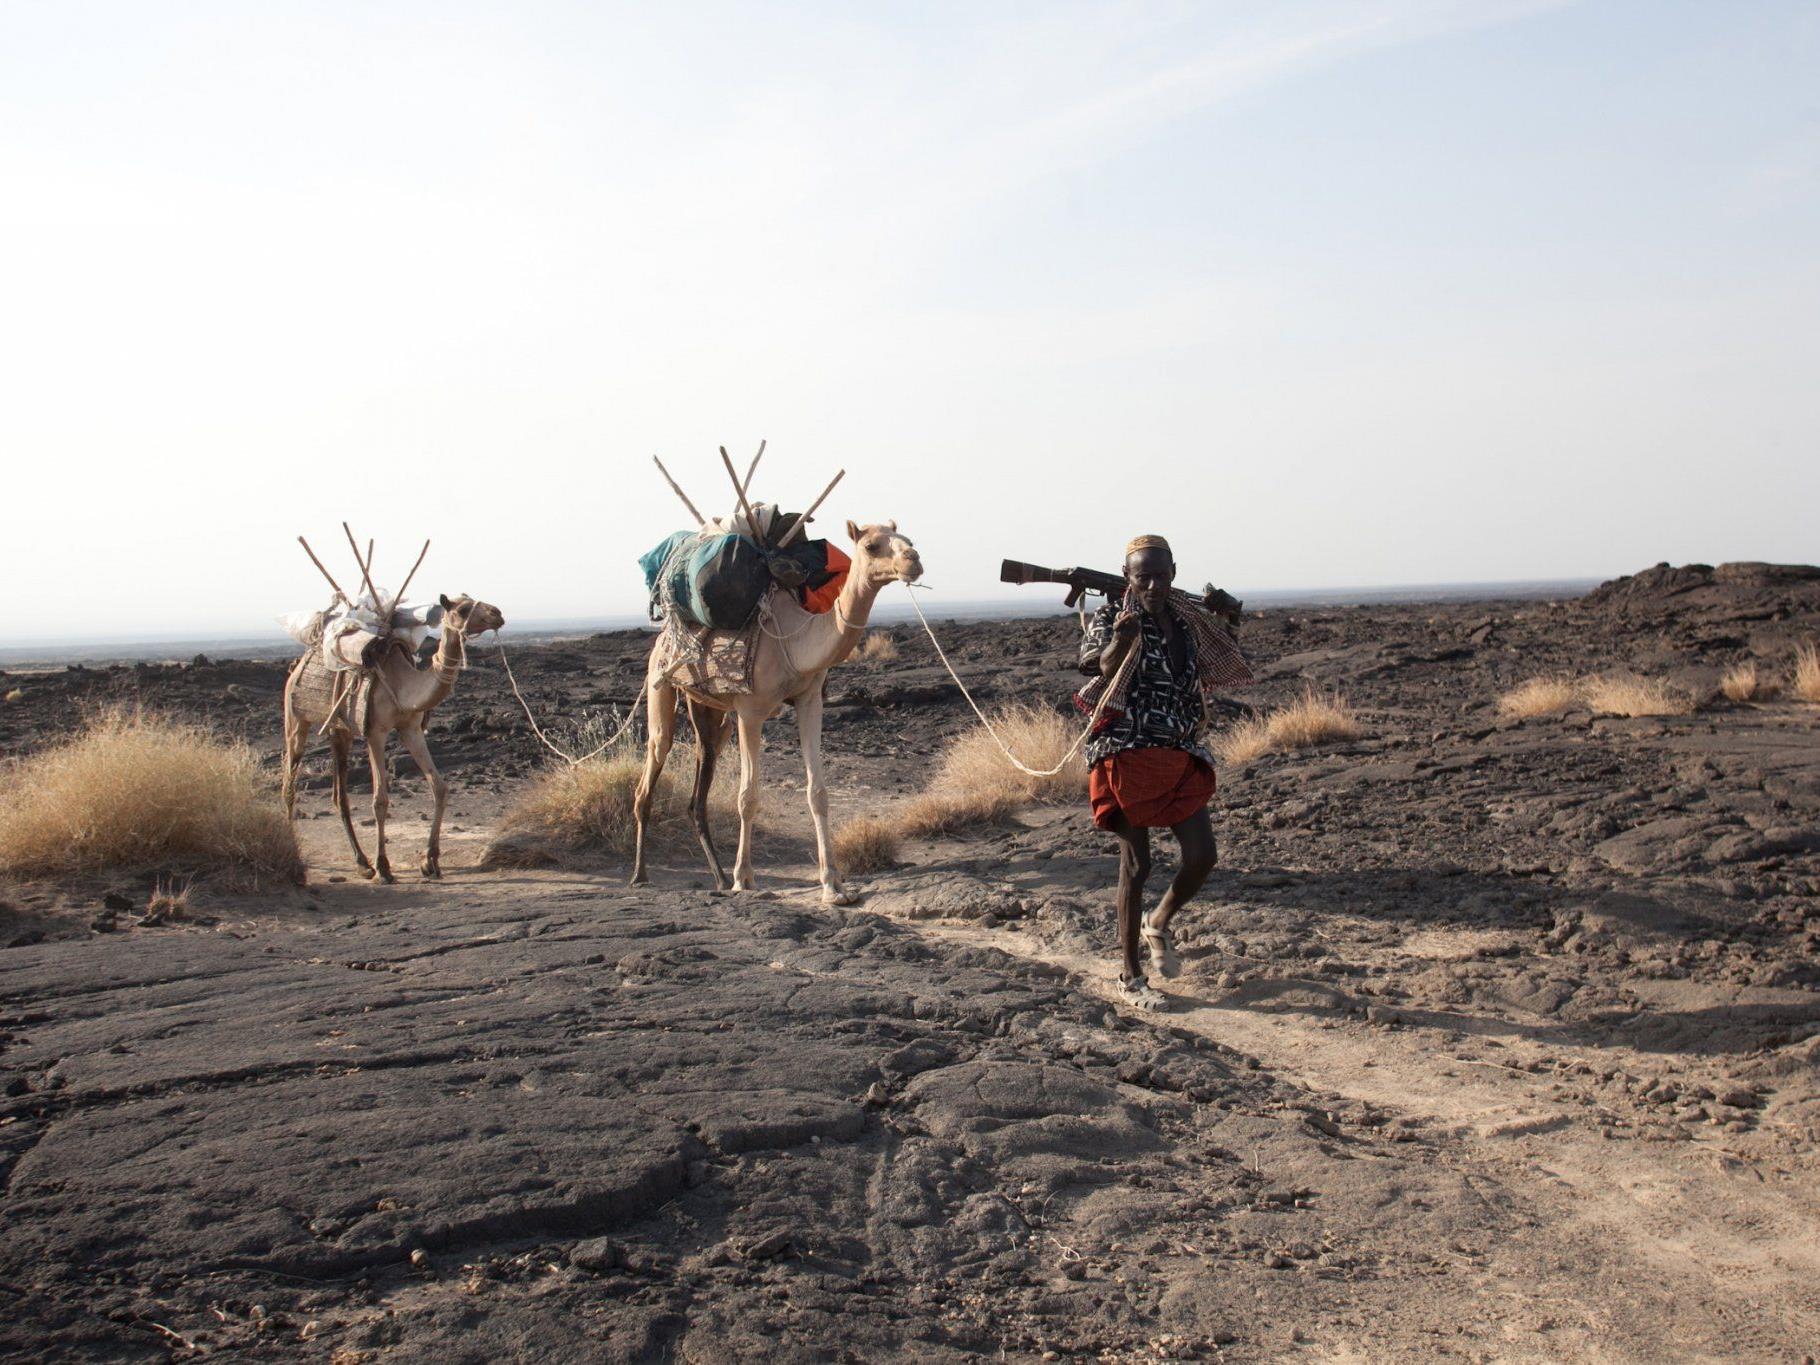 Kamele mit ihrem Führer in der Danakil-Wüste im Norden Äthiopiens, im Jahr 2011. Bei dem Überfall auf europäische Touristen in dieser Gegend ist ein Österreicher getötet worden.